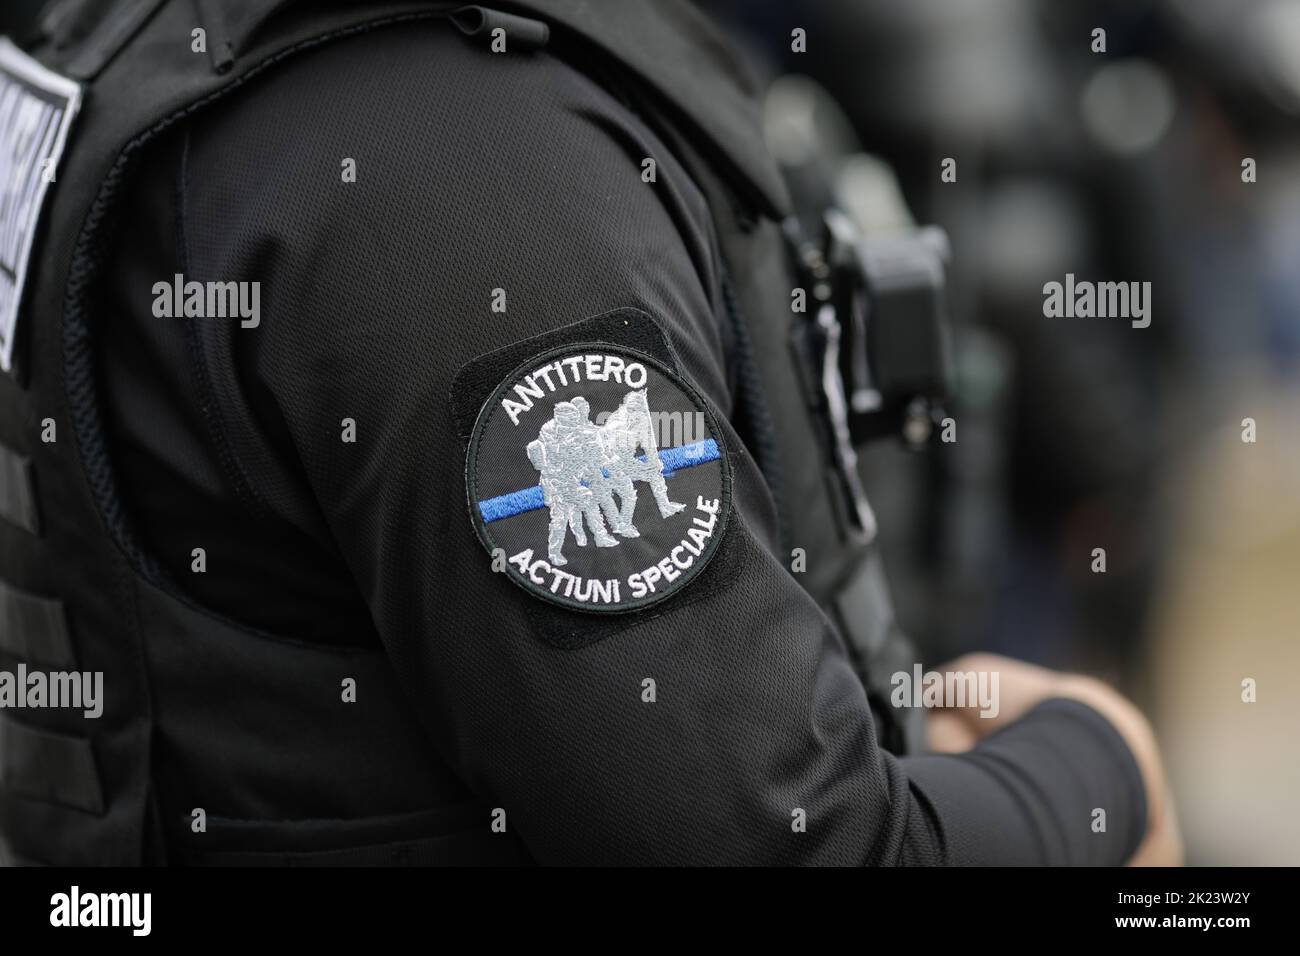 Sarulesti, Roumanie - 22 septembre 2022: Détails avec la brigade anti-terroriste du jandami roumain (police anti-émeute). Banque D'Images